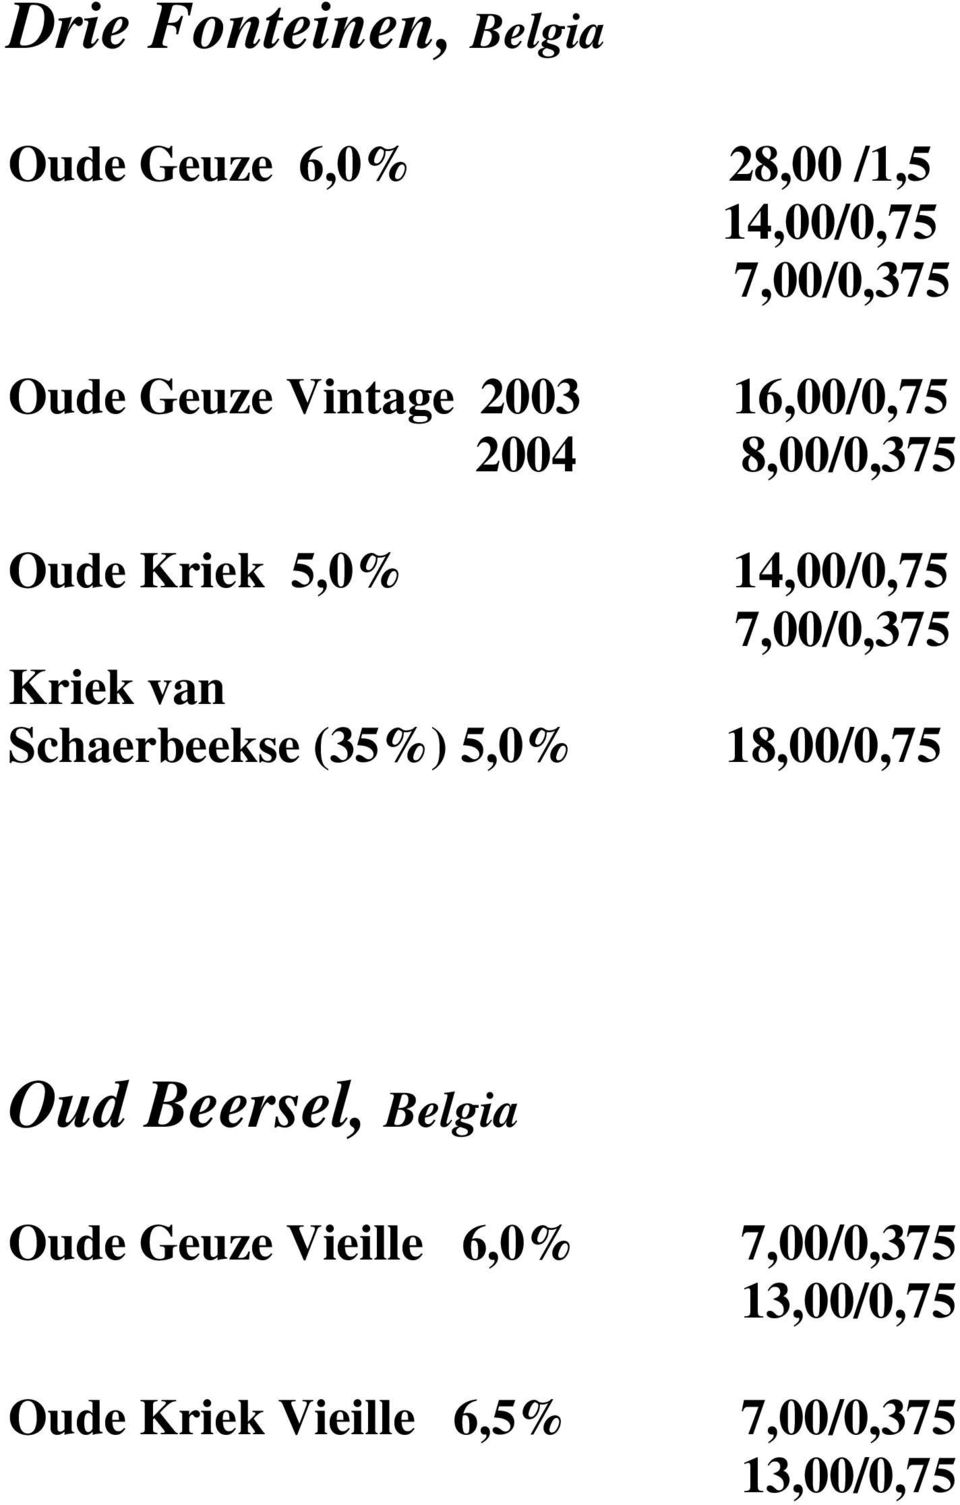 7,00/0,375 Kriek van Schaerbeekse (35%) 5,0% 18,00/0,75 Oud Beersel, Belgia